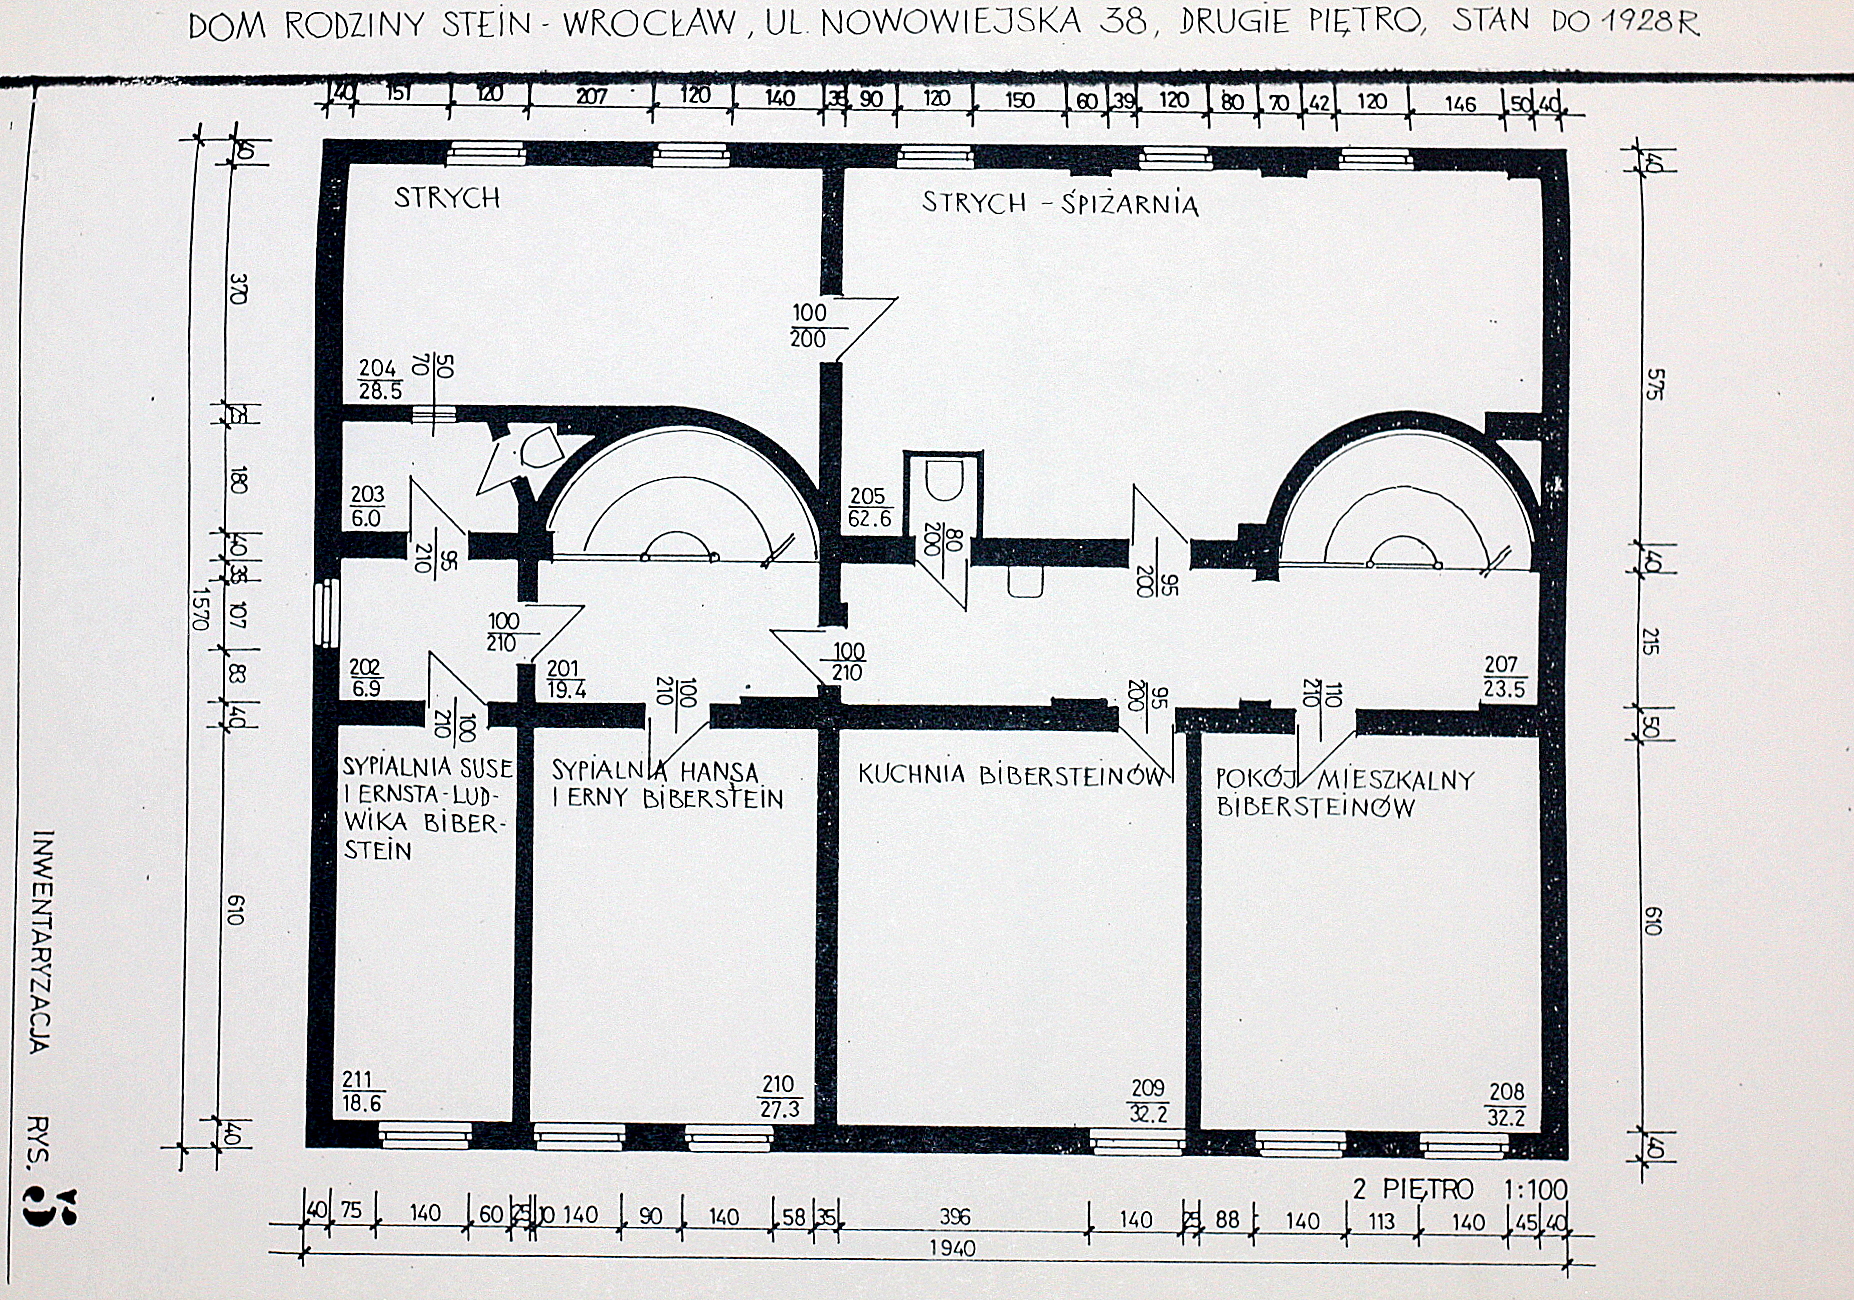 Plan domu Steinów przy Michaelisstrasse 38 we Wrocławiu przed 1928 rokiem, II piętro, archiwum Towarzystwa im. Edyty Stein we Wrocławiu. 